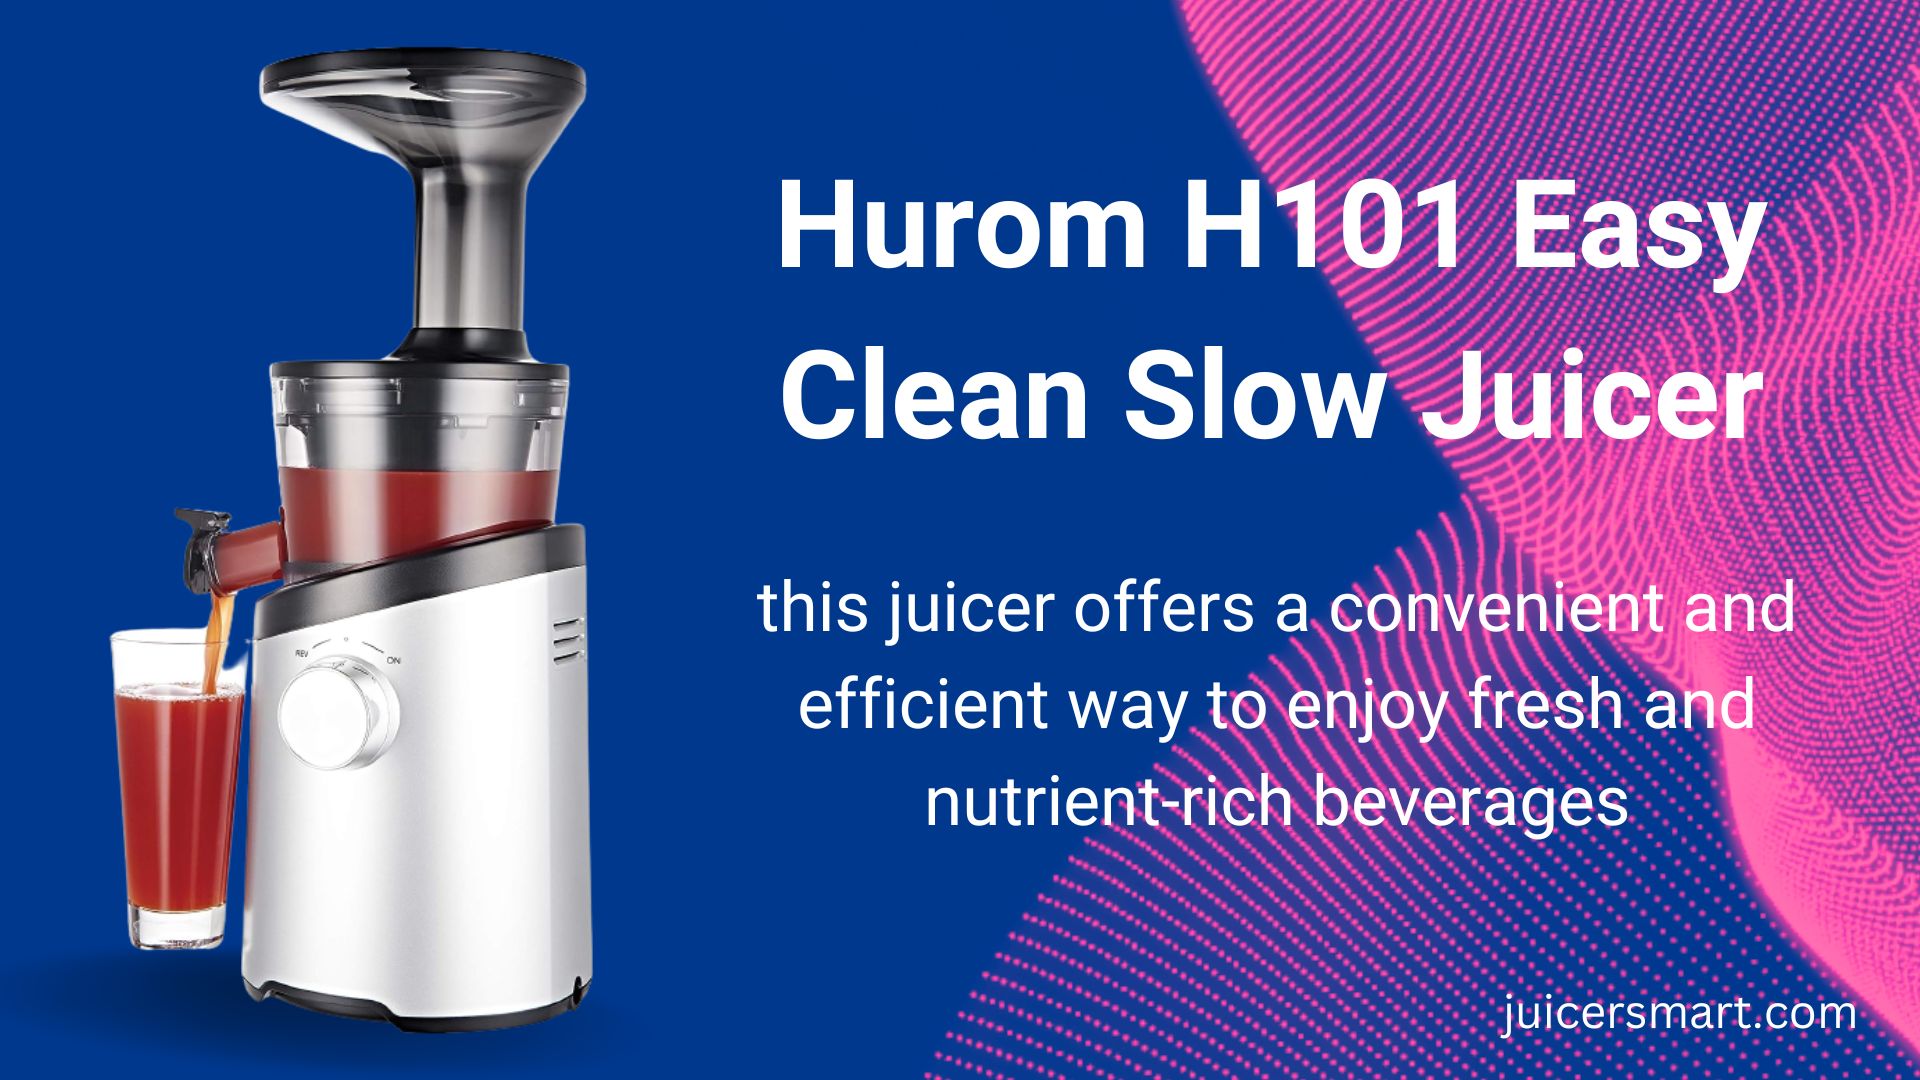 Hurom H101 Easy Clean Slow Juicer